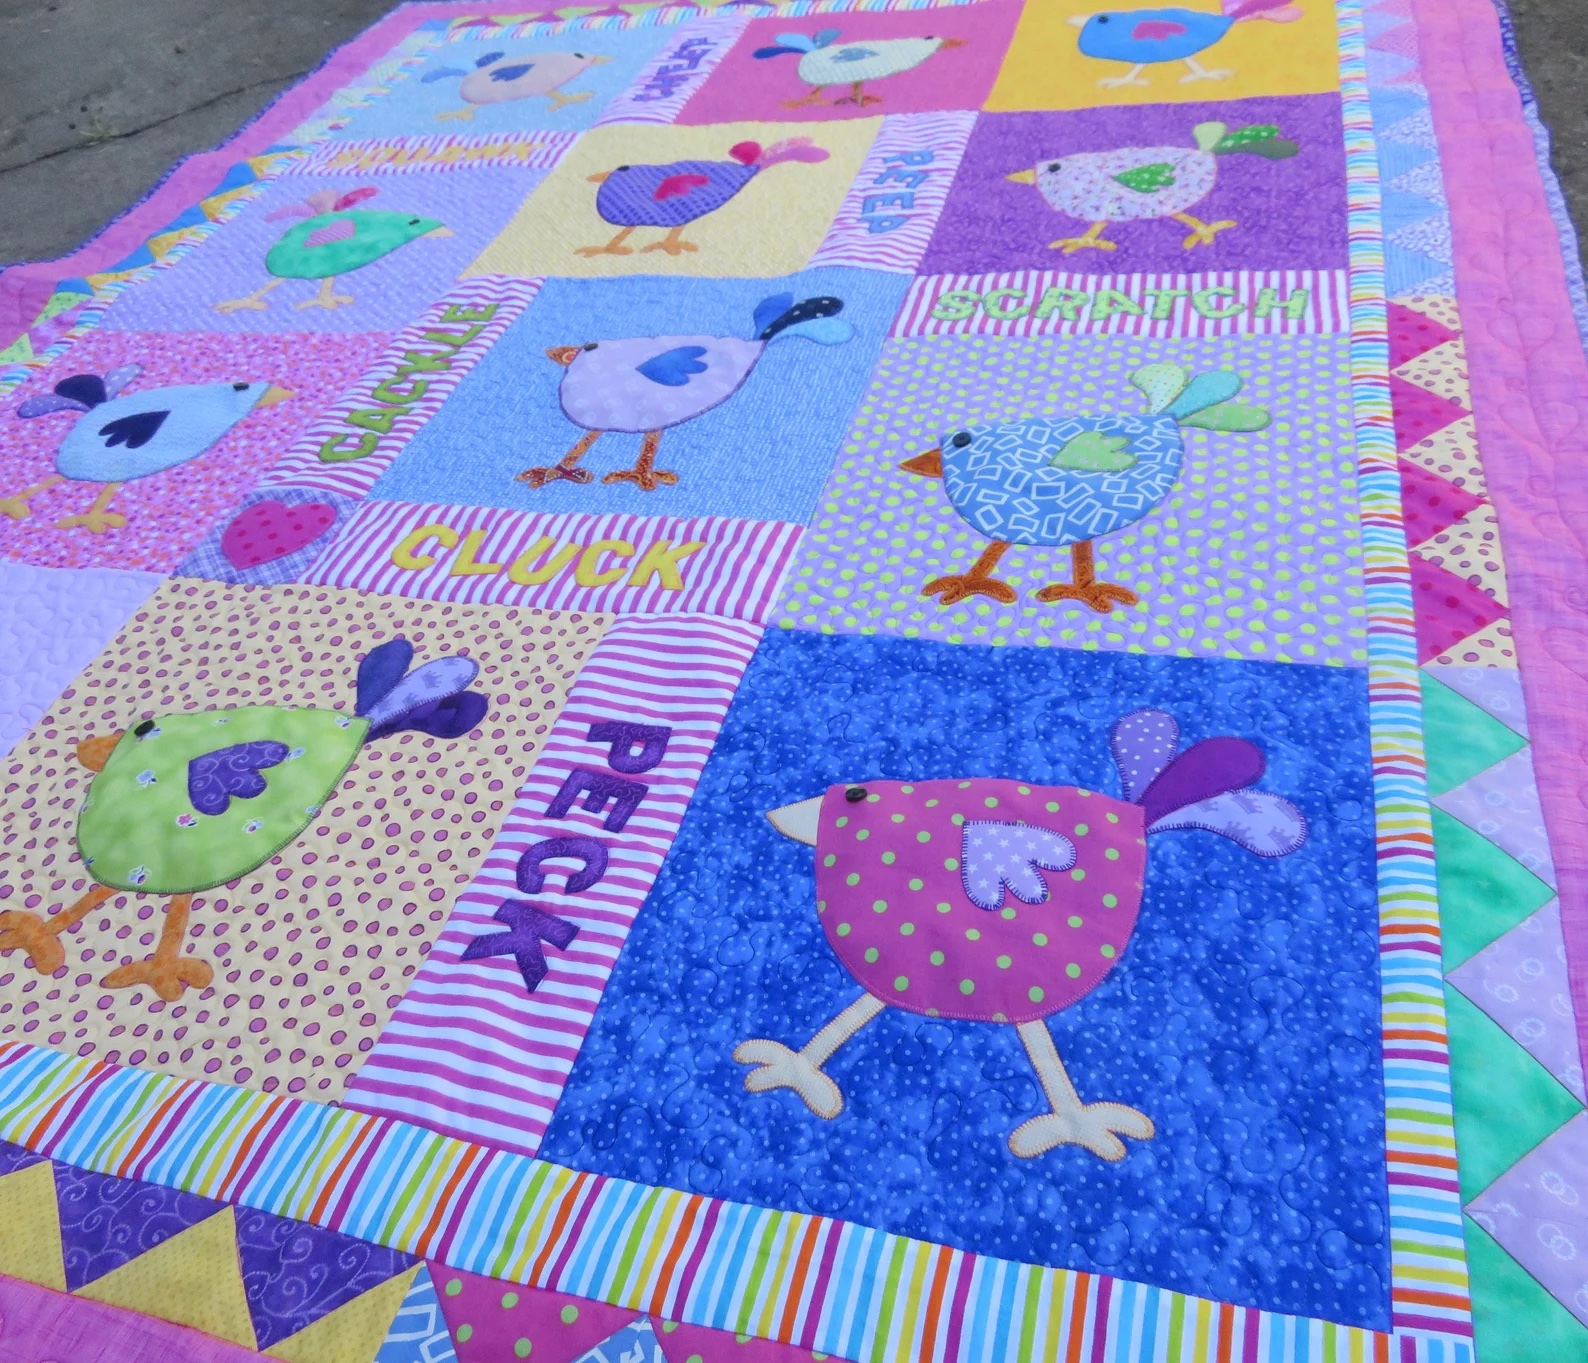 Millie's chickens chicken quilt patterns